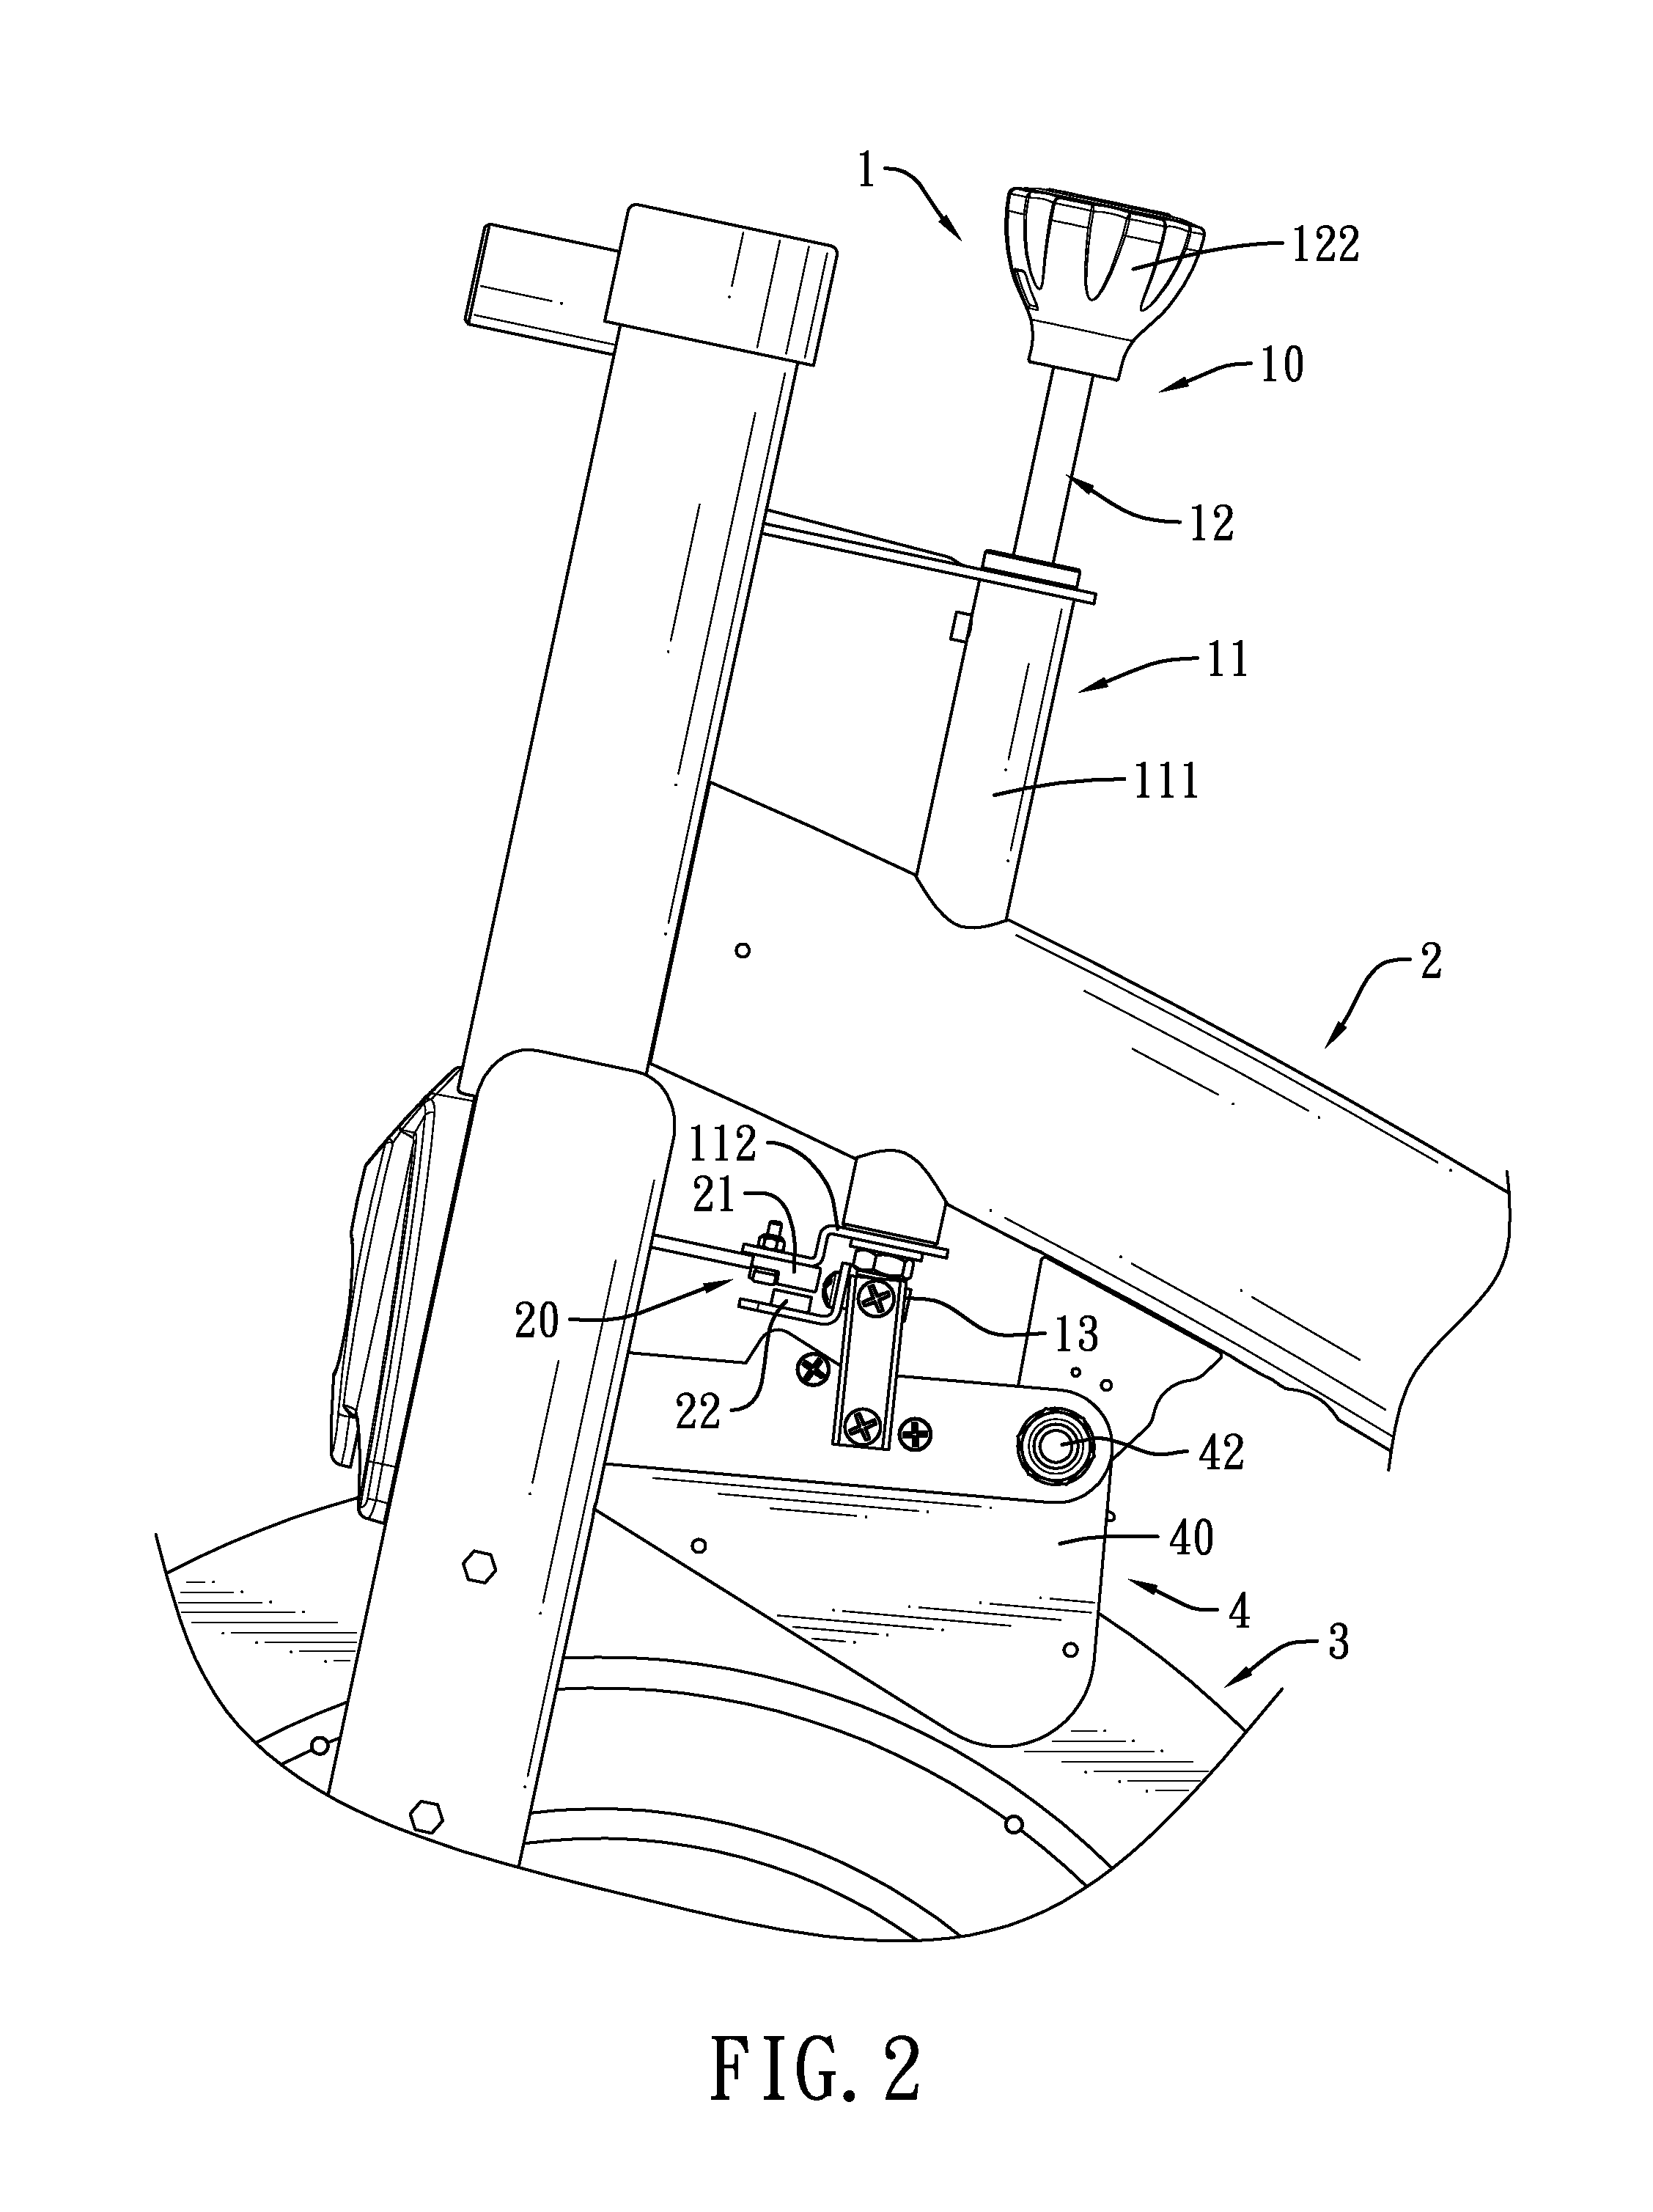 Torque sensing apparatus